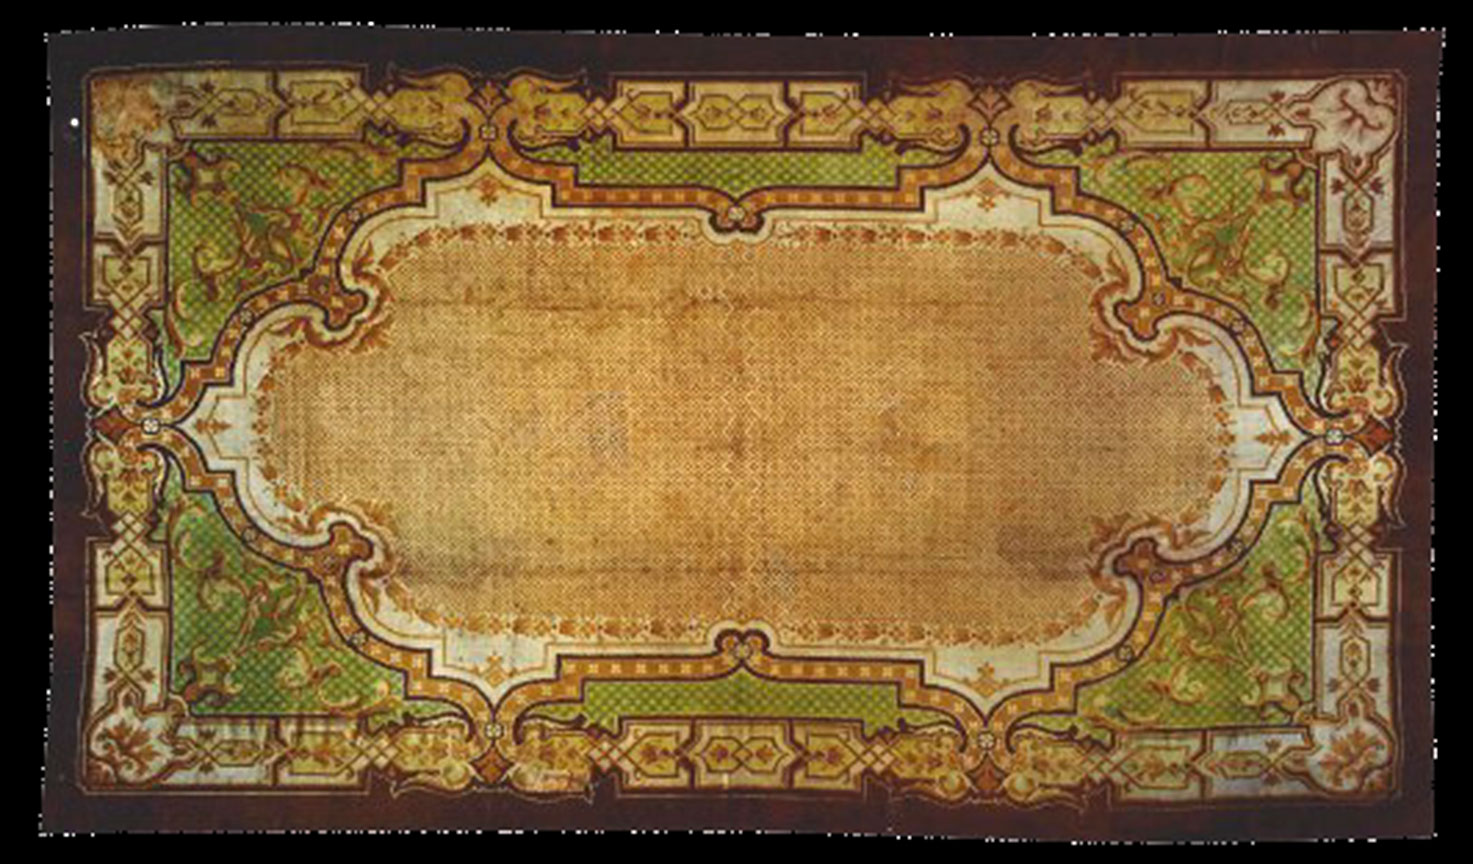 Antique axminster Carpet - # 52458